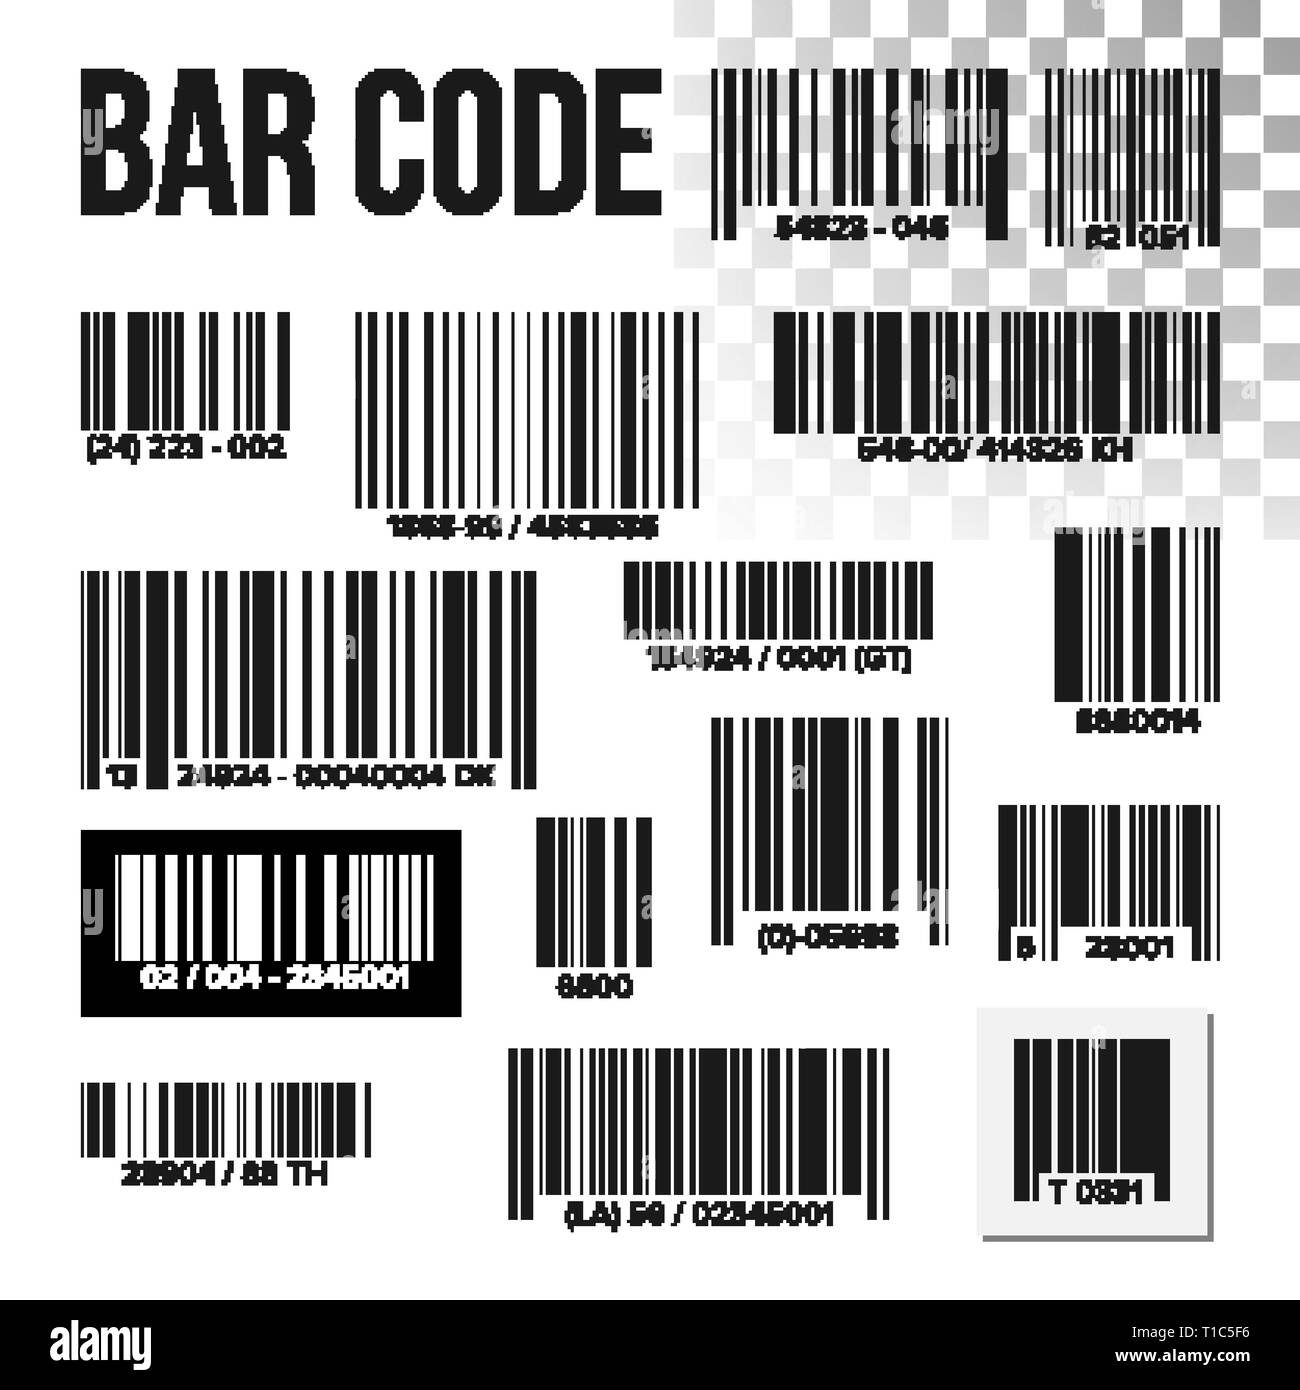 Bar Code Set Vector. Price Scan. Product Label. Information UPC Scanner.  Digital Reader. Identification Sign. Illustration Stock Vector Image & Art  - Alamy